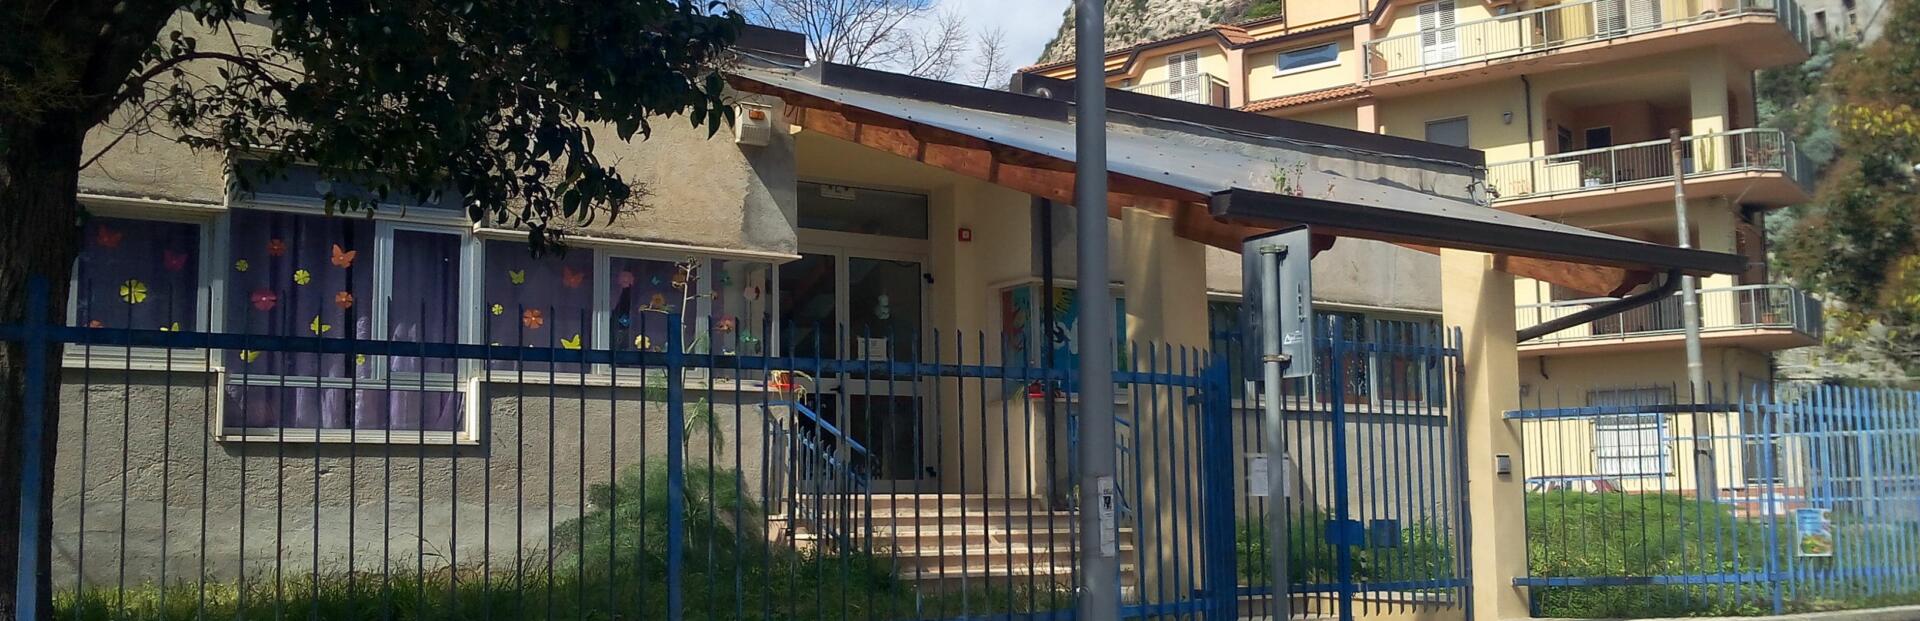 In fase di ripulitura la zona della Scuola Materna “Gramsci”